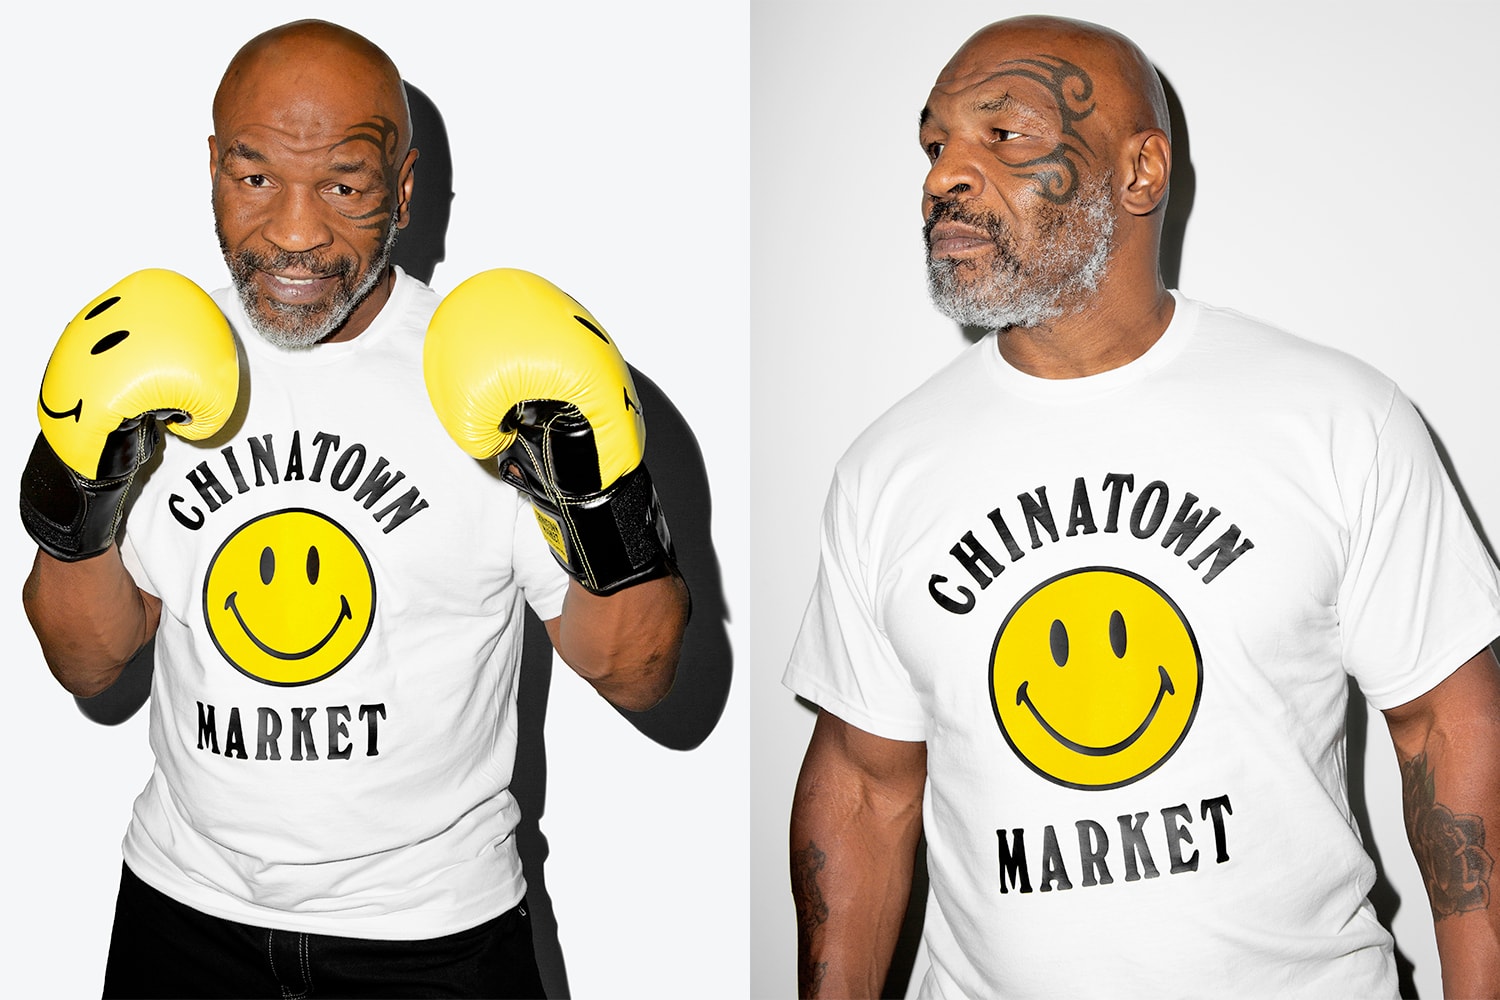 マイク・タイソン× Chinatown Market によるコラボカプセルコレクションが登場 Chinatown Market x Mike Tyson Capsule collection Release Info boxing graphic t-shirts hooded sweatshirts lookbook 